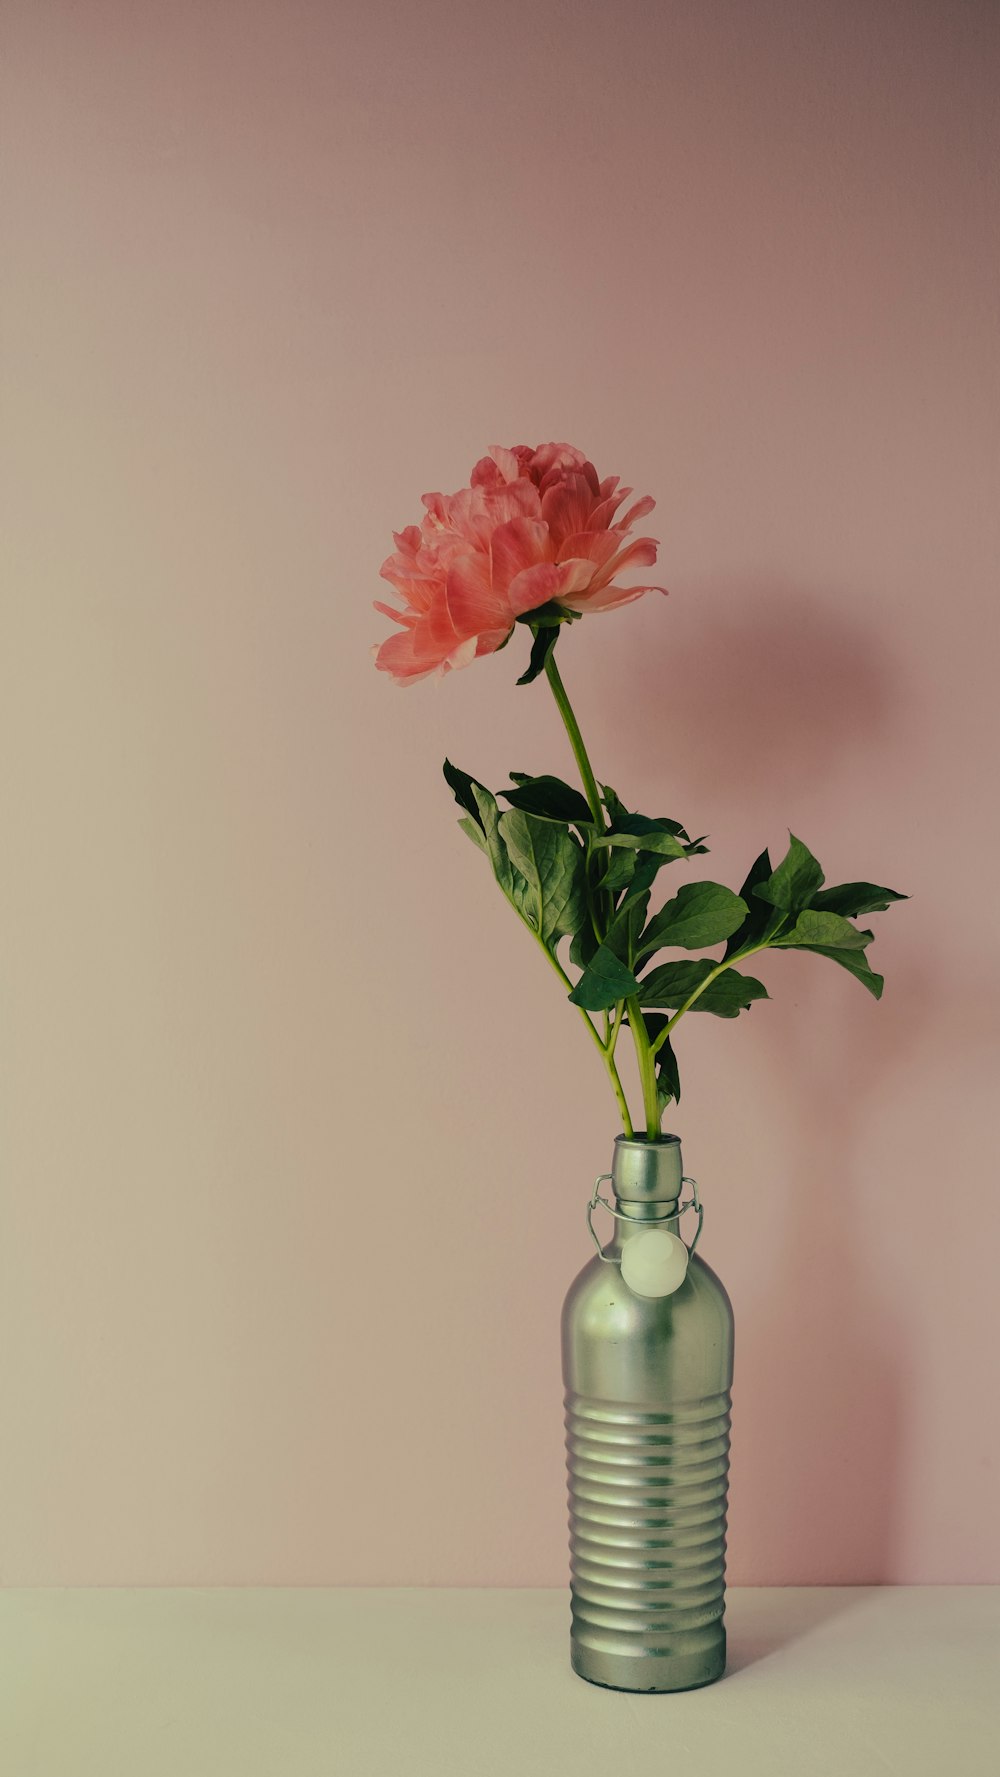 テーブルの上の緑の花瓶にピンクの花